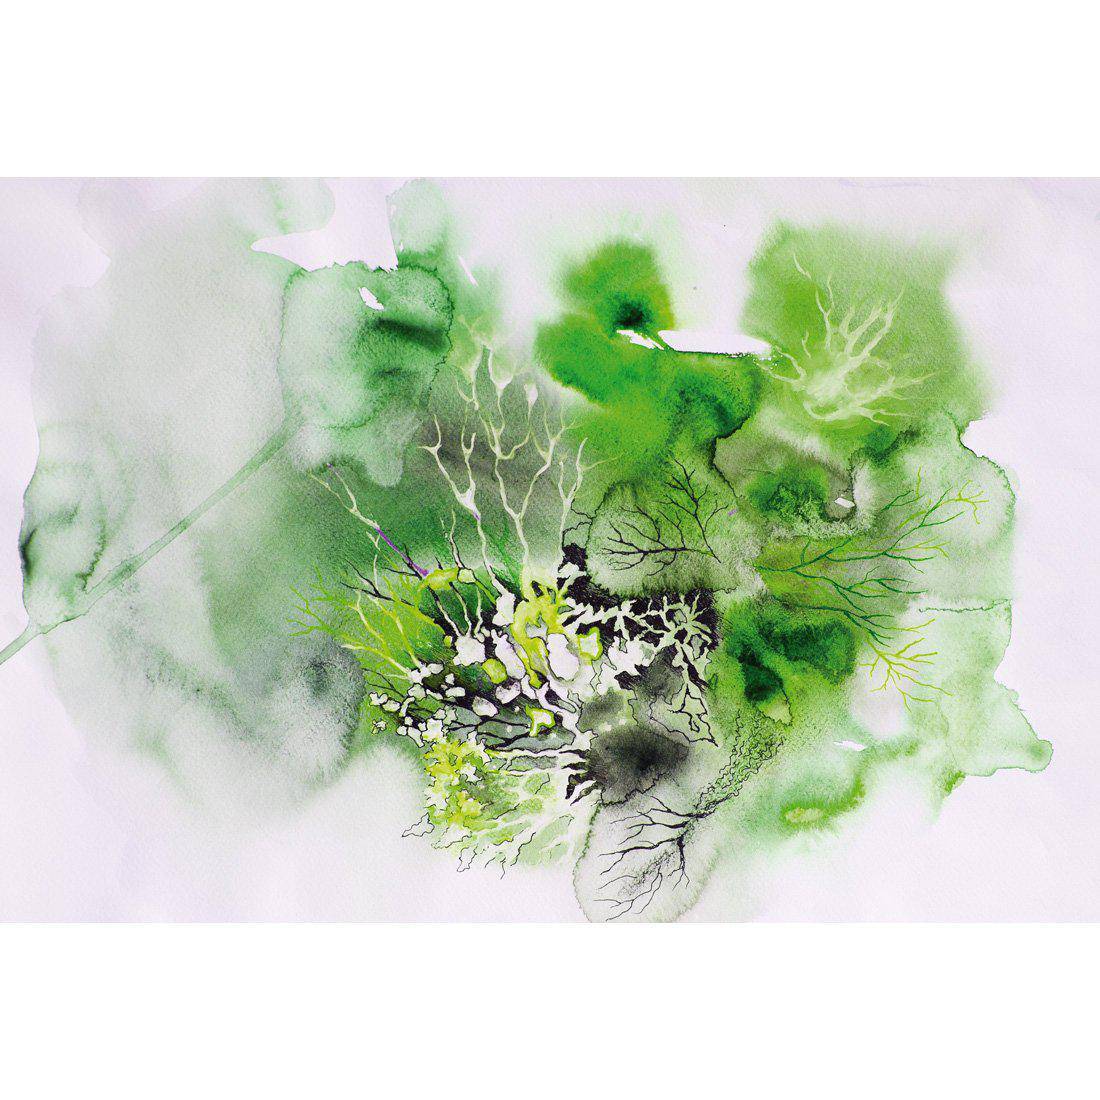 Veins Of Life Green Canvas Art-Canvas-Wall Art Designs-45x30cm-Canvas - No Frame-Wall Art Designs